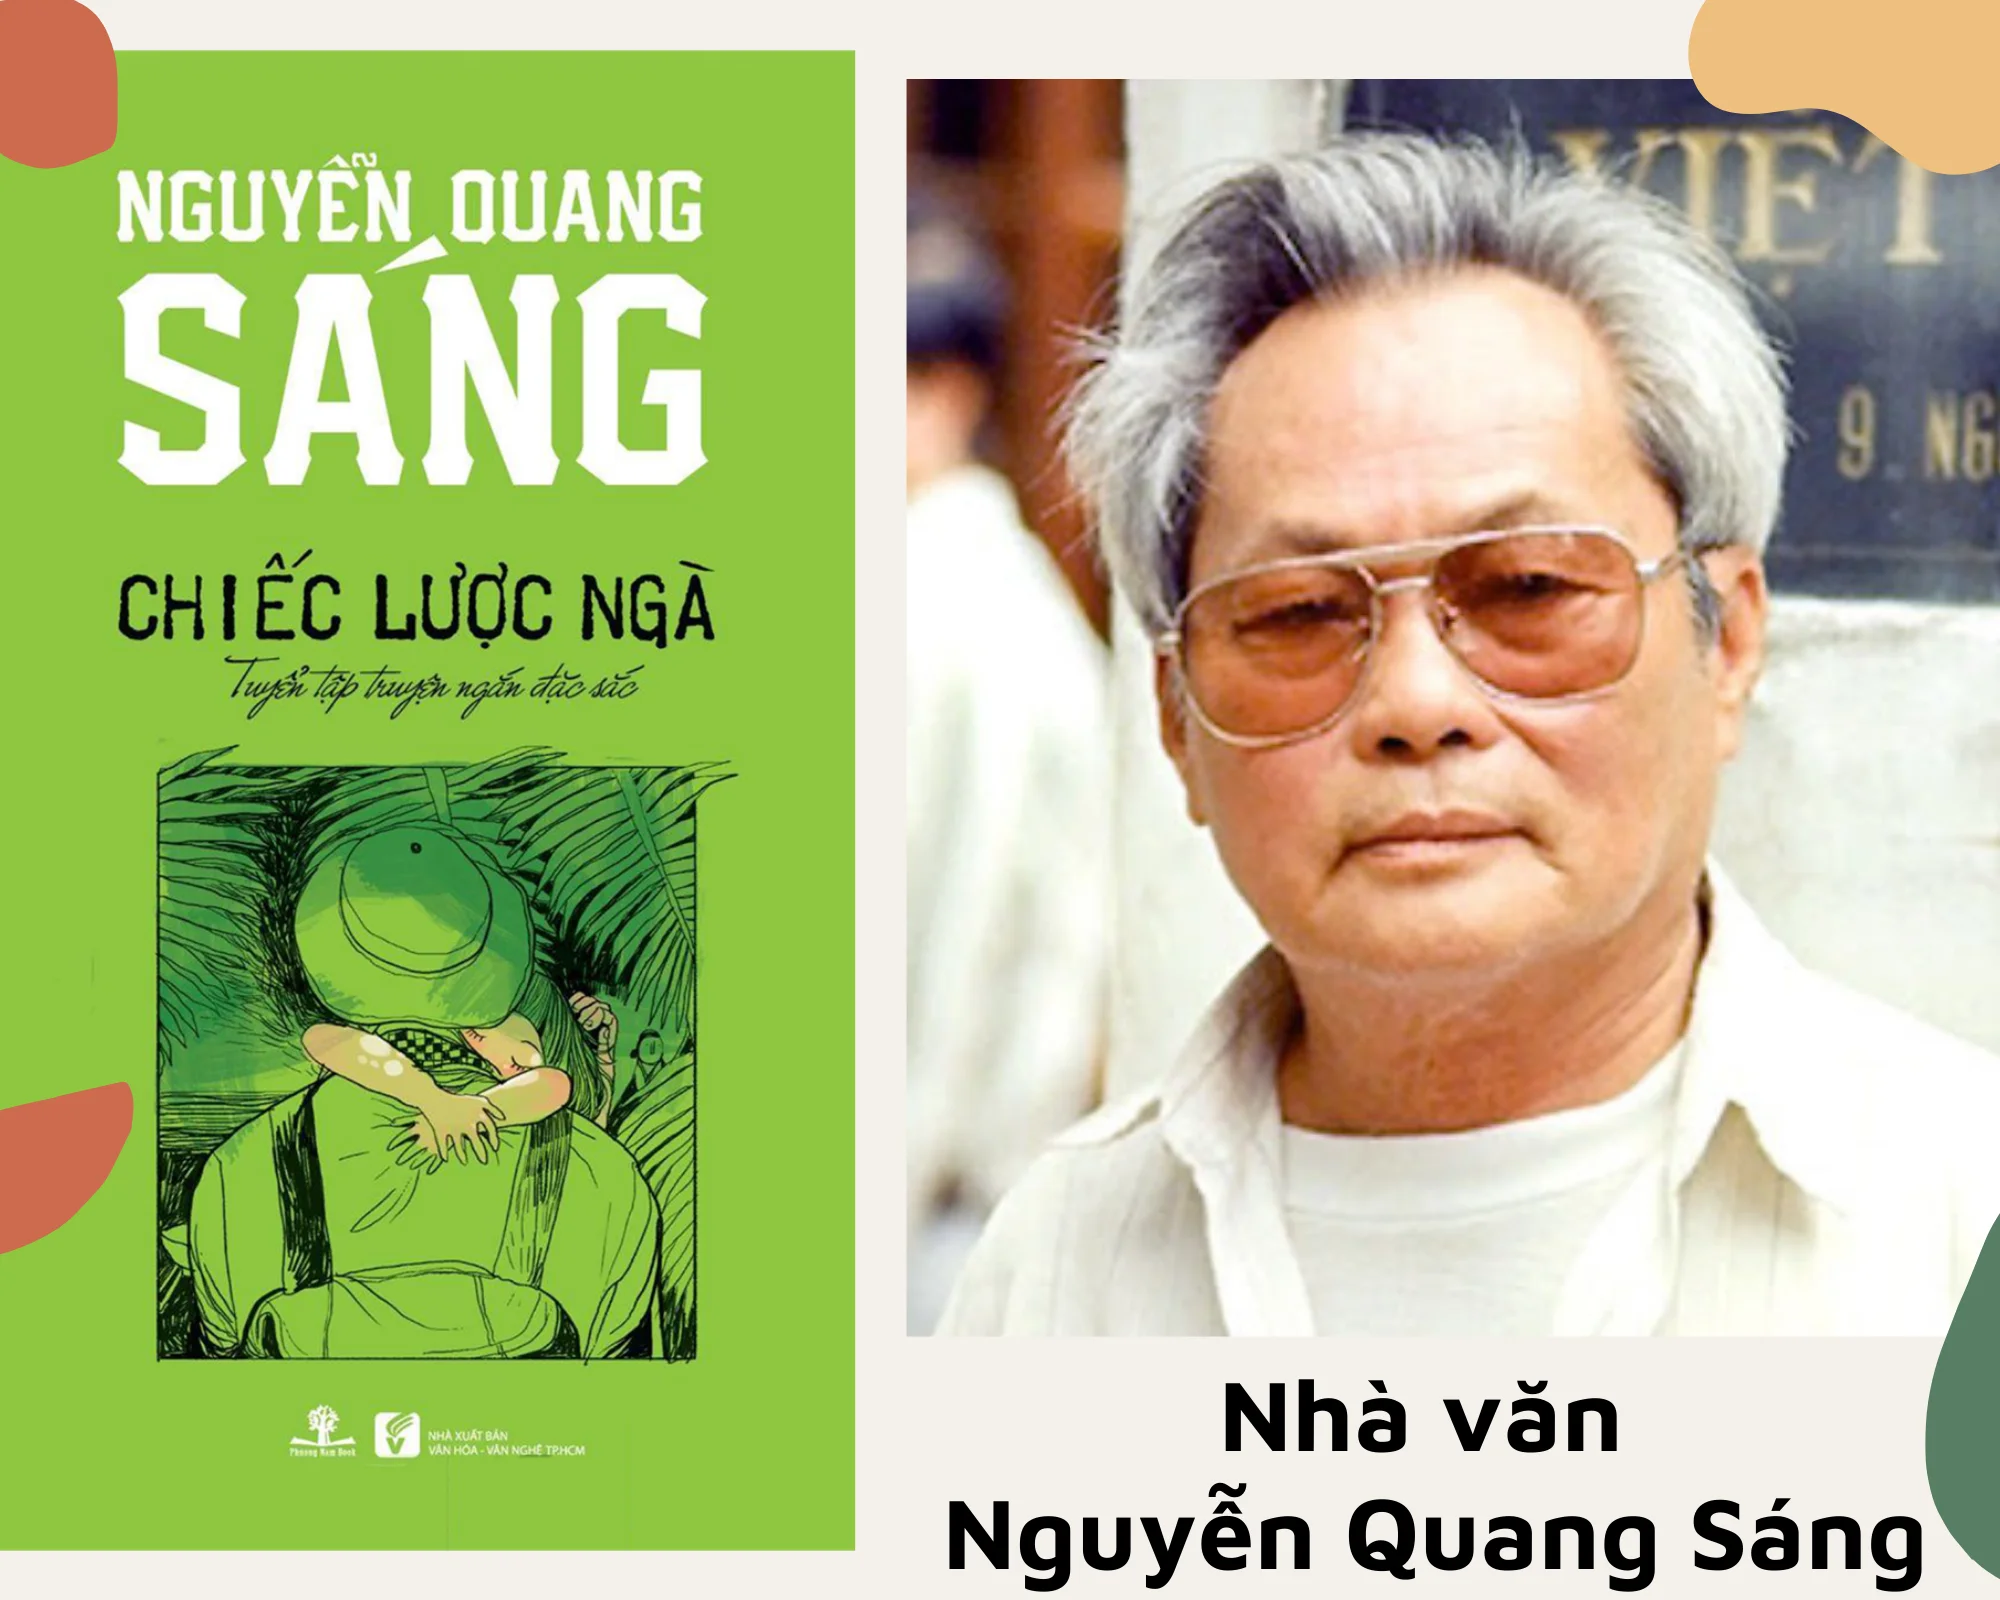 Cảm nhận của em về đoạn trích truyện “Chiếc lược ngà” của Nguyễn Quang Sáng.